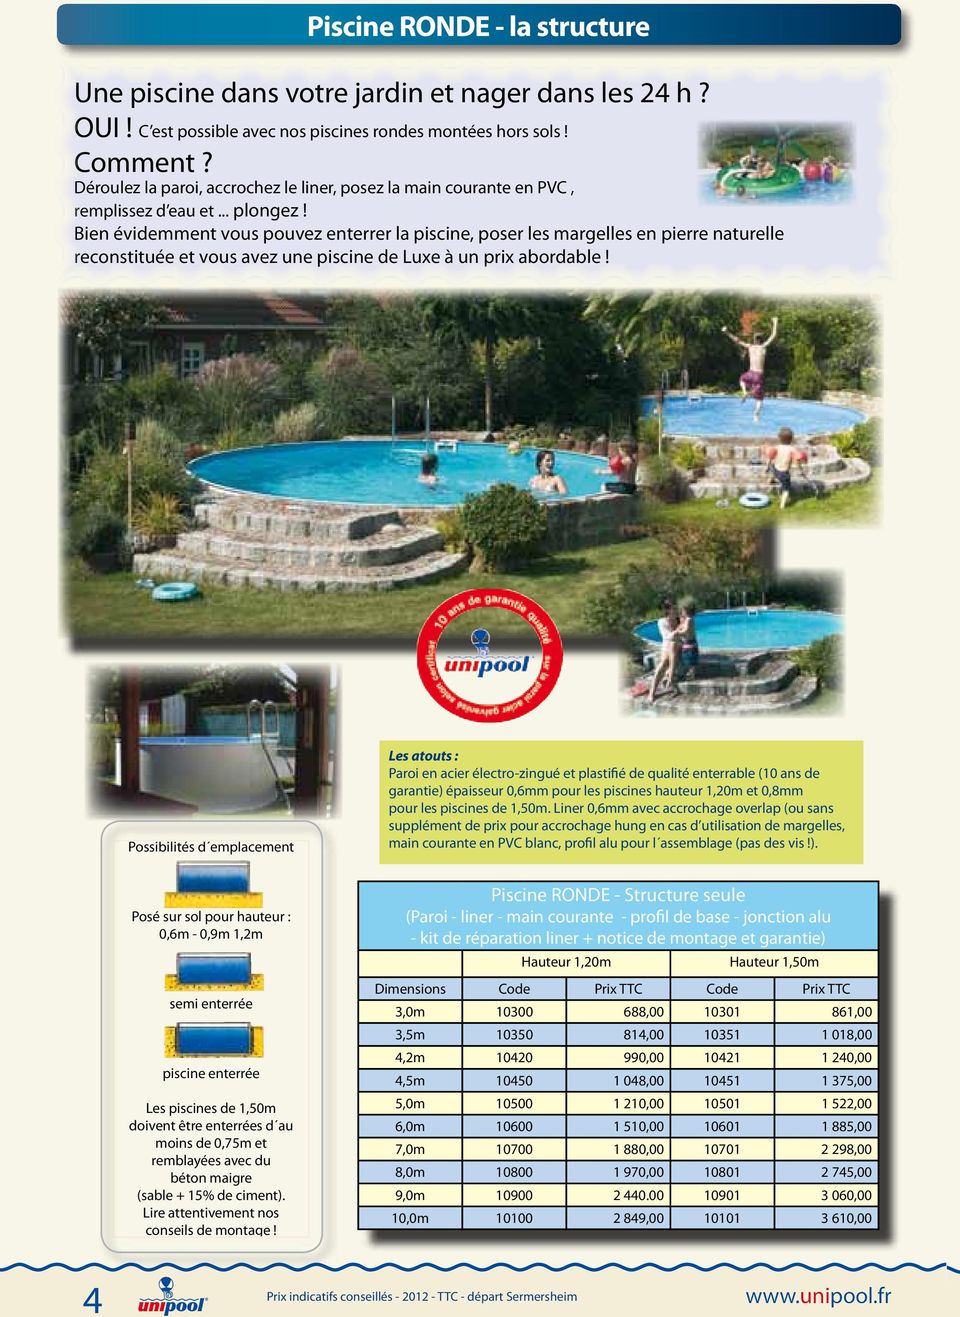 Bien évidemment vous pouvez enterrer la piscine, poser les margelles en pierre naturelle reconstituée et vous avez une piscine de Luxe à un prix abordable!